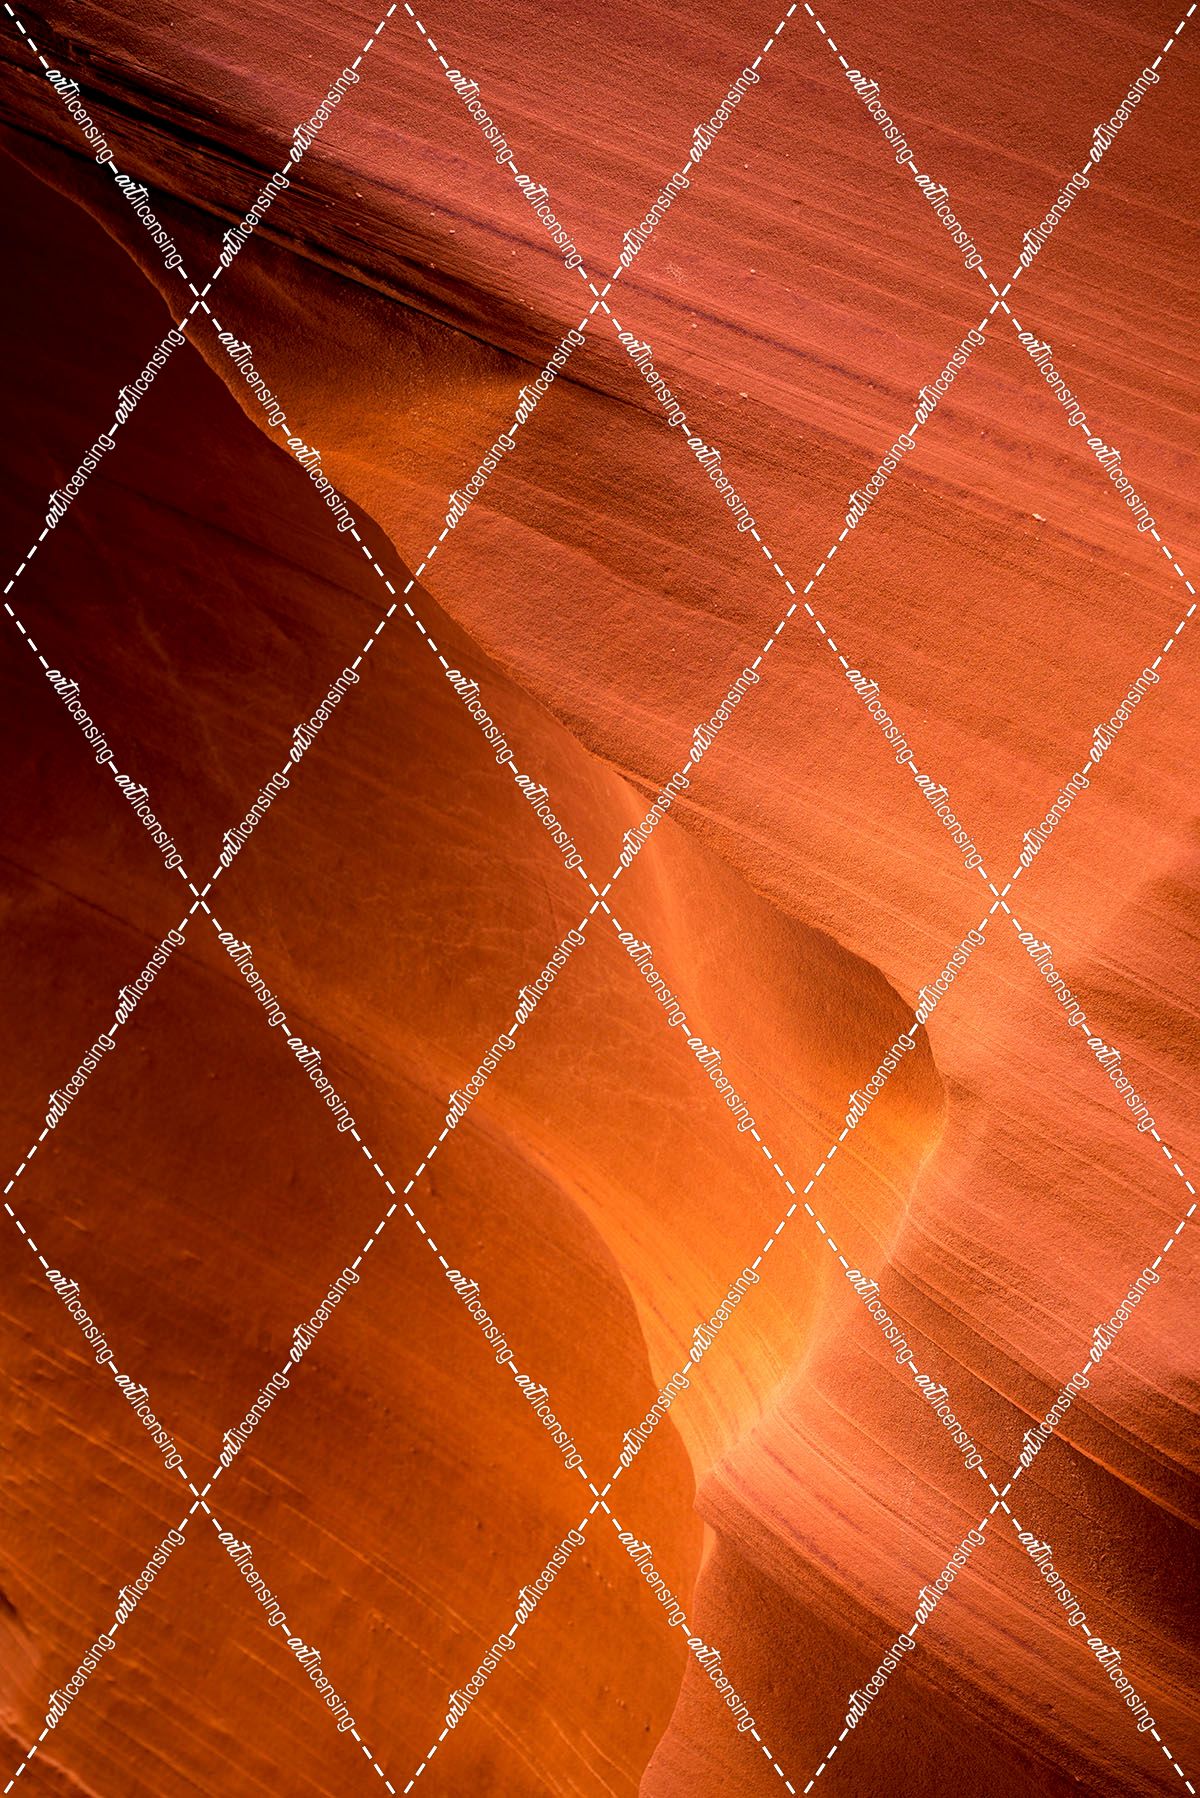 Canyon Texture